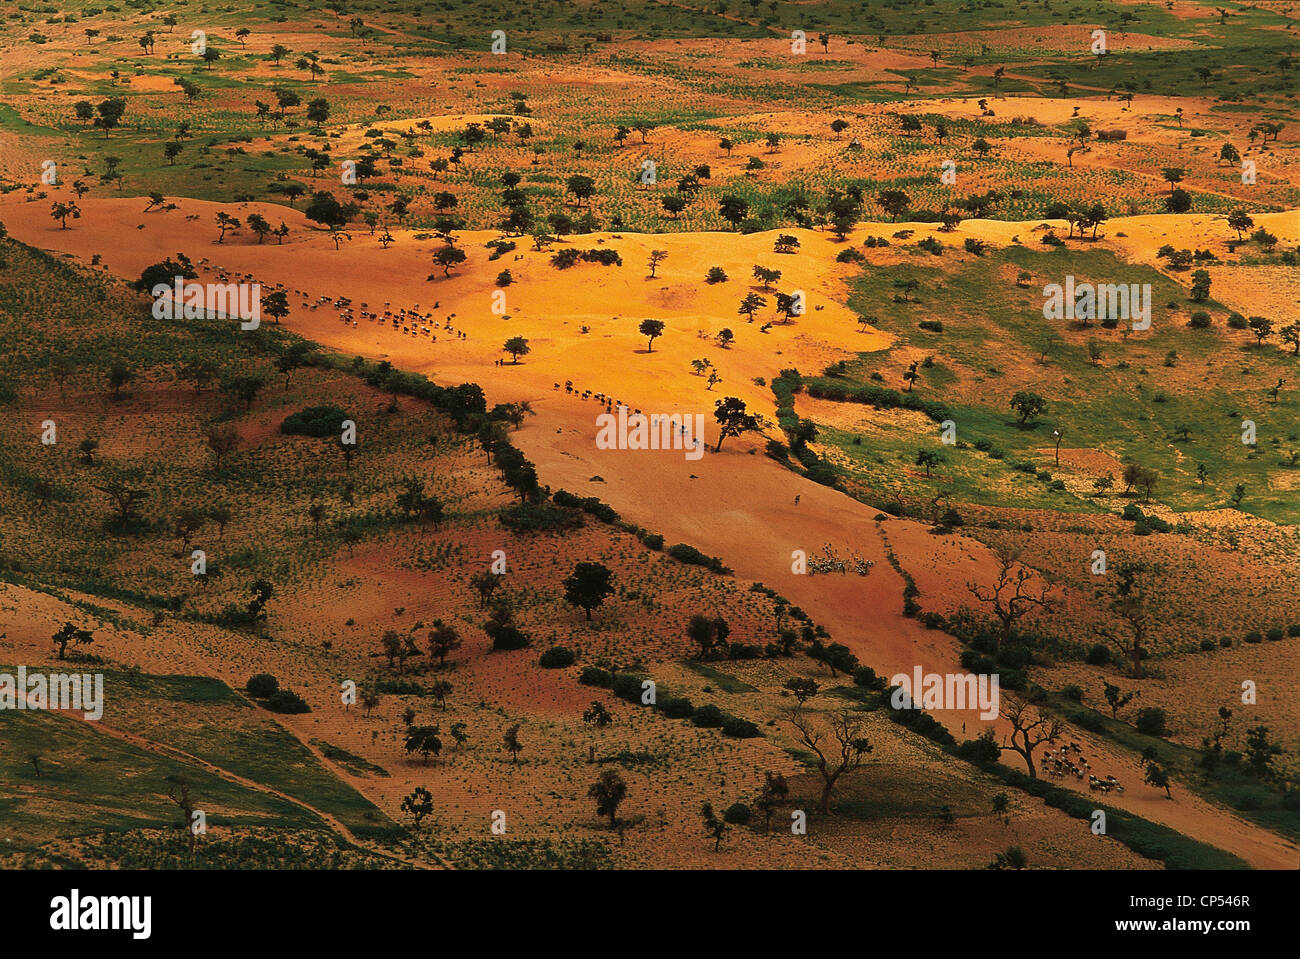 Mali - regione Dogon. Suolo sabbioso vicino a Tireli, attraversata da mandrie in cerca di pascoli. Foto Stock